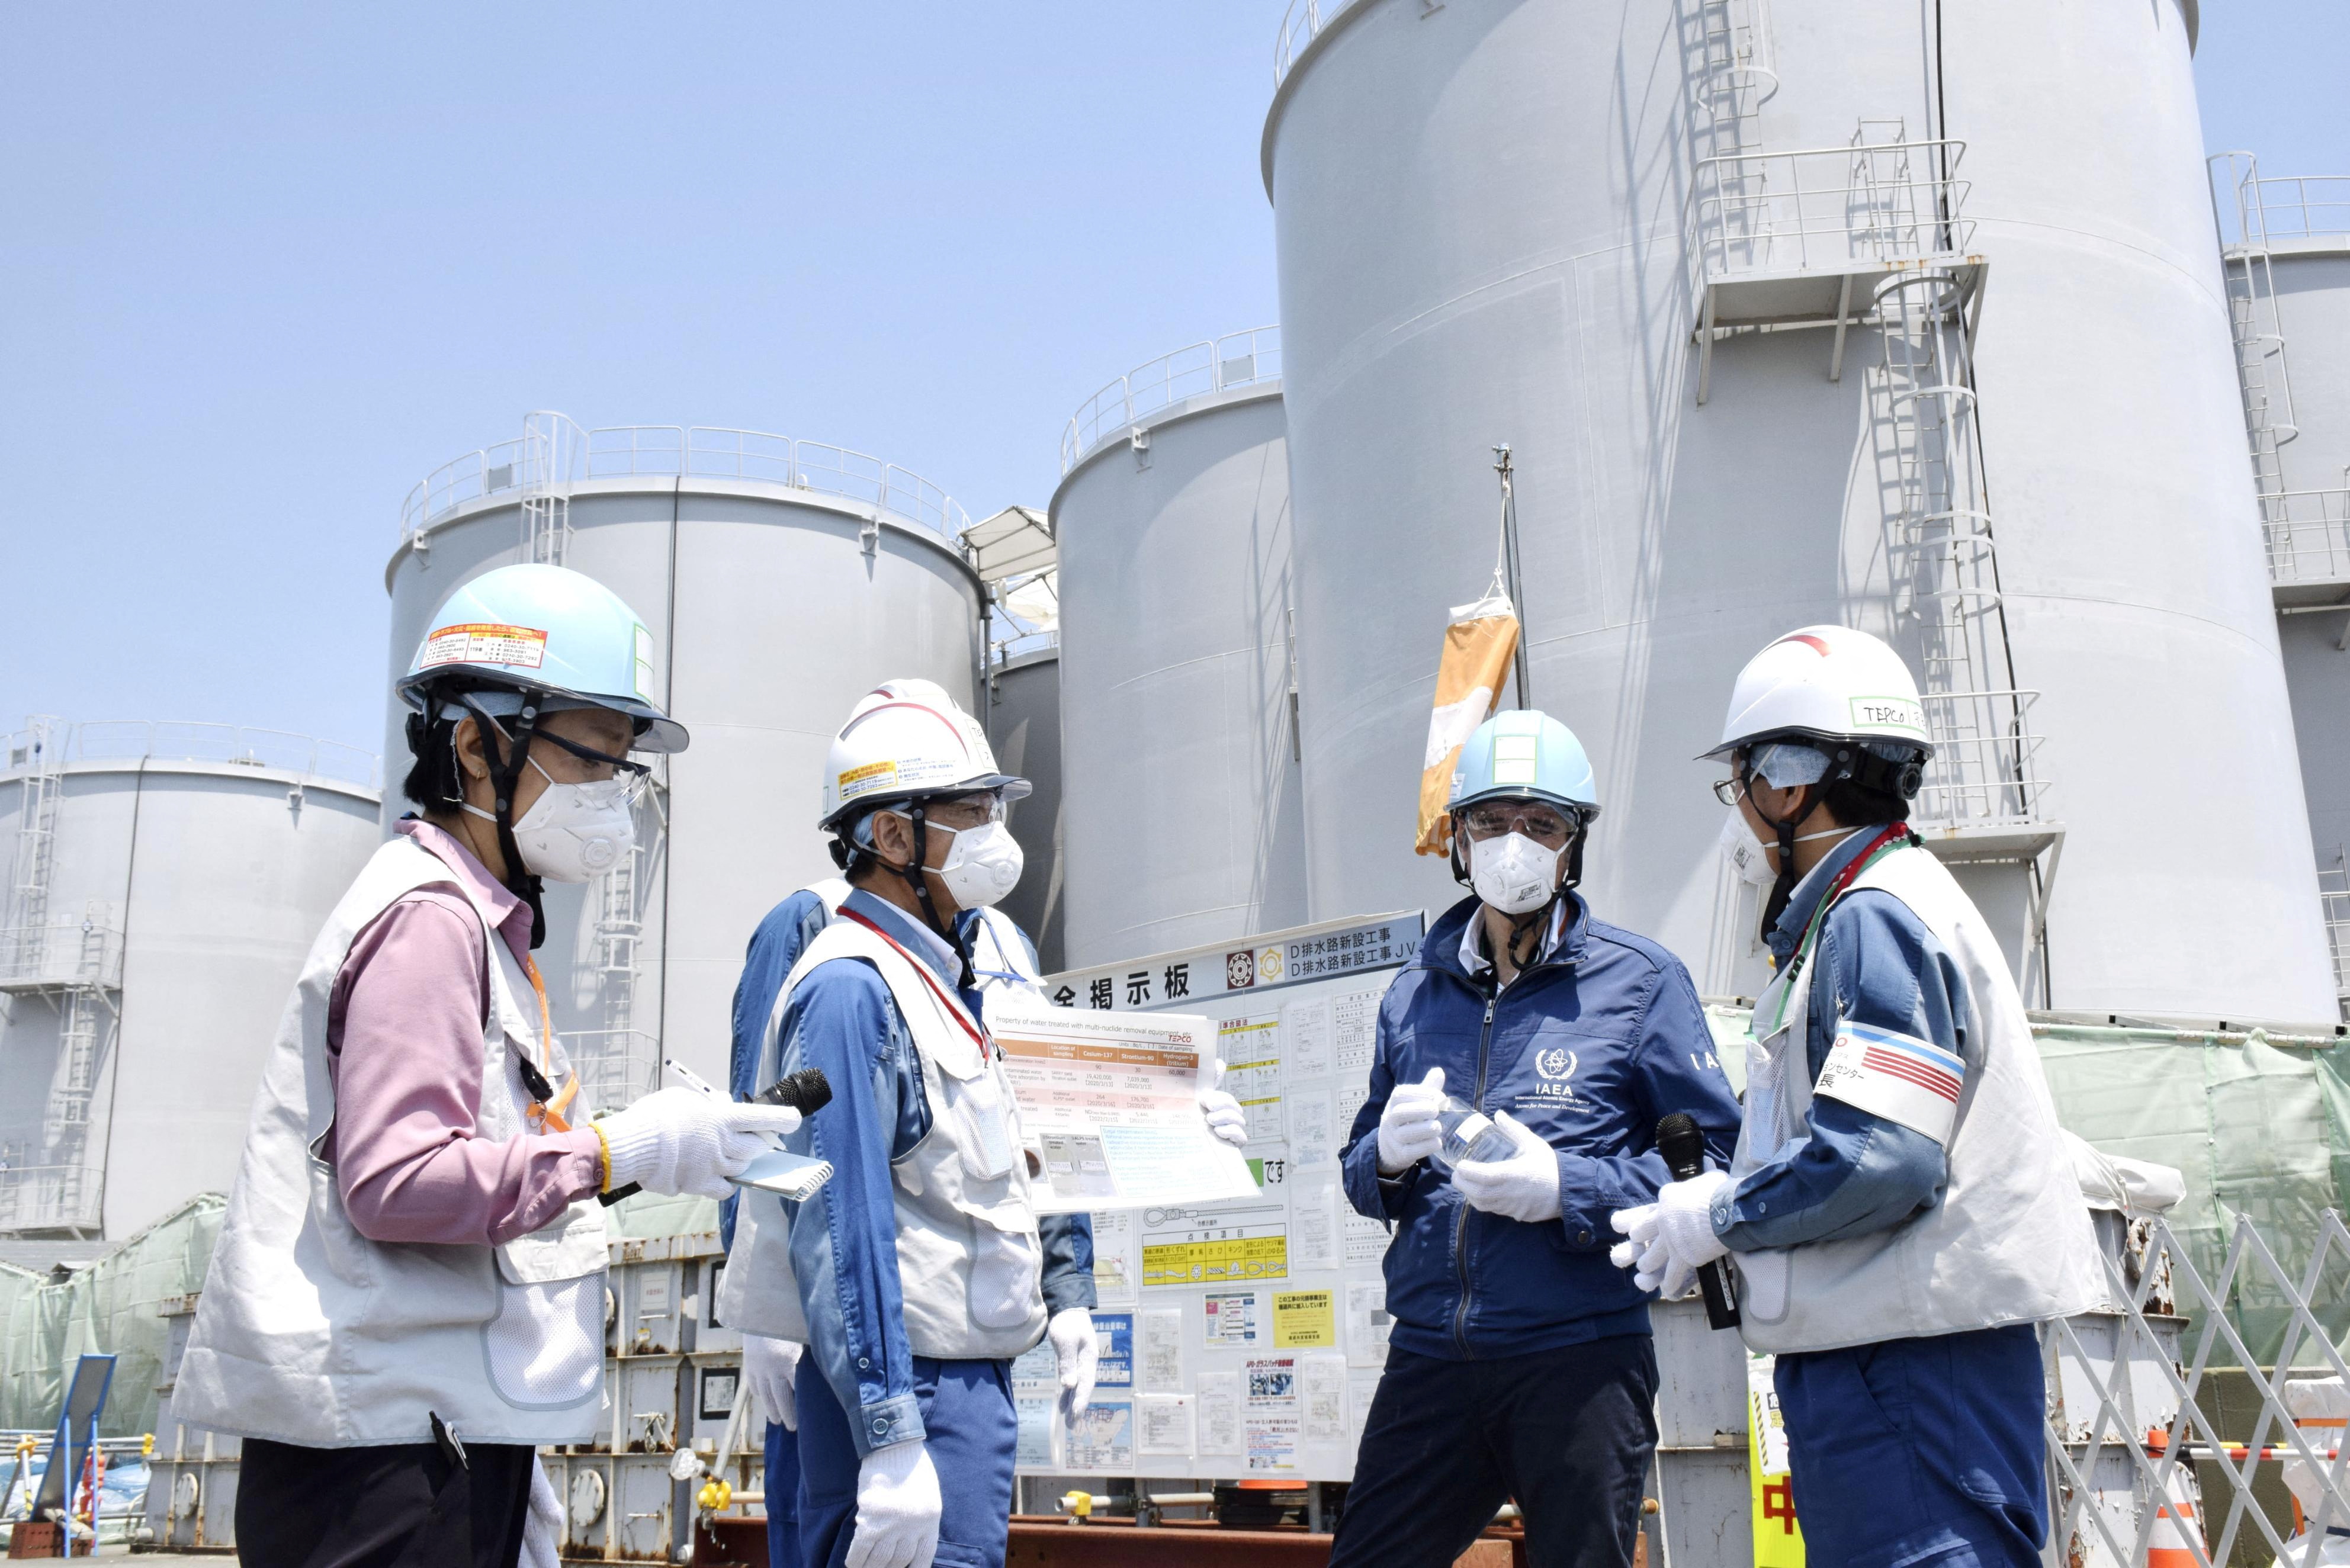 Esta medida alarga el plan inicial de la Compañía Eléctrica Tokyo Power (Tepco), que apuntaba como objetivo iniciar las labores de expulsión de aguas en la primavera de este año, después de filtrarlas con la intención de diluirlas en agua salada y echarlas al mar. (REUTERS)